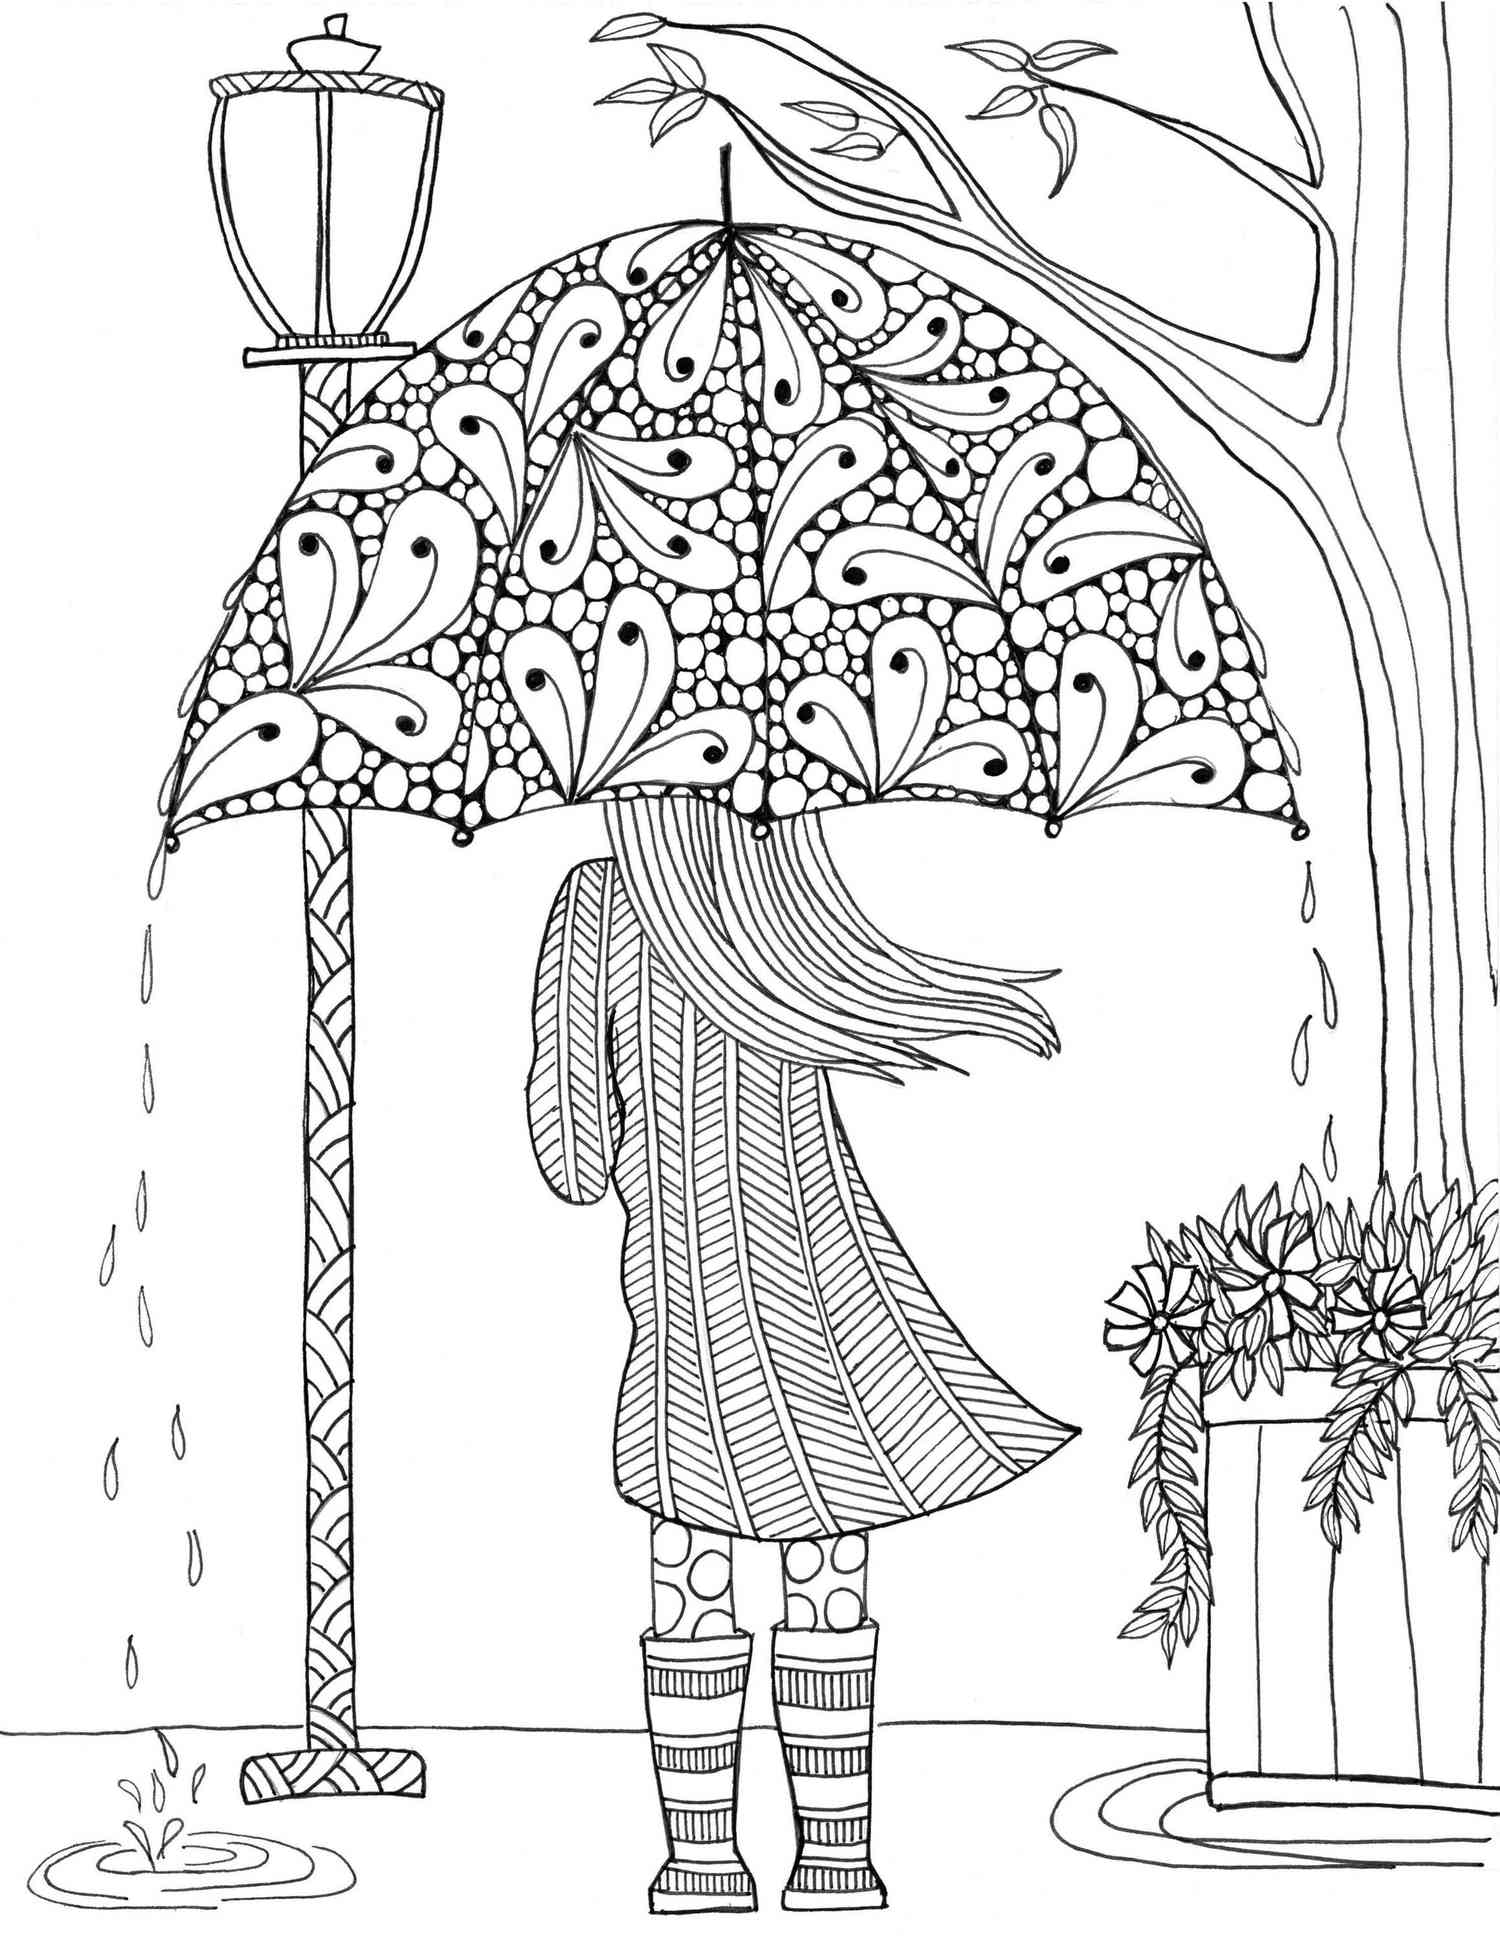 成人涂色页，画着一个女孩站在伞下